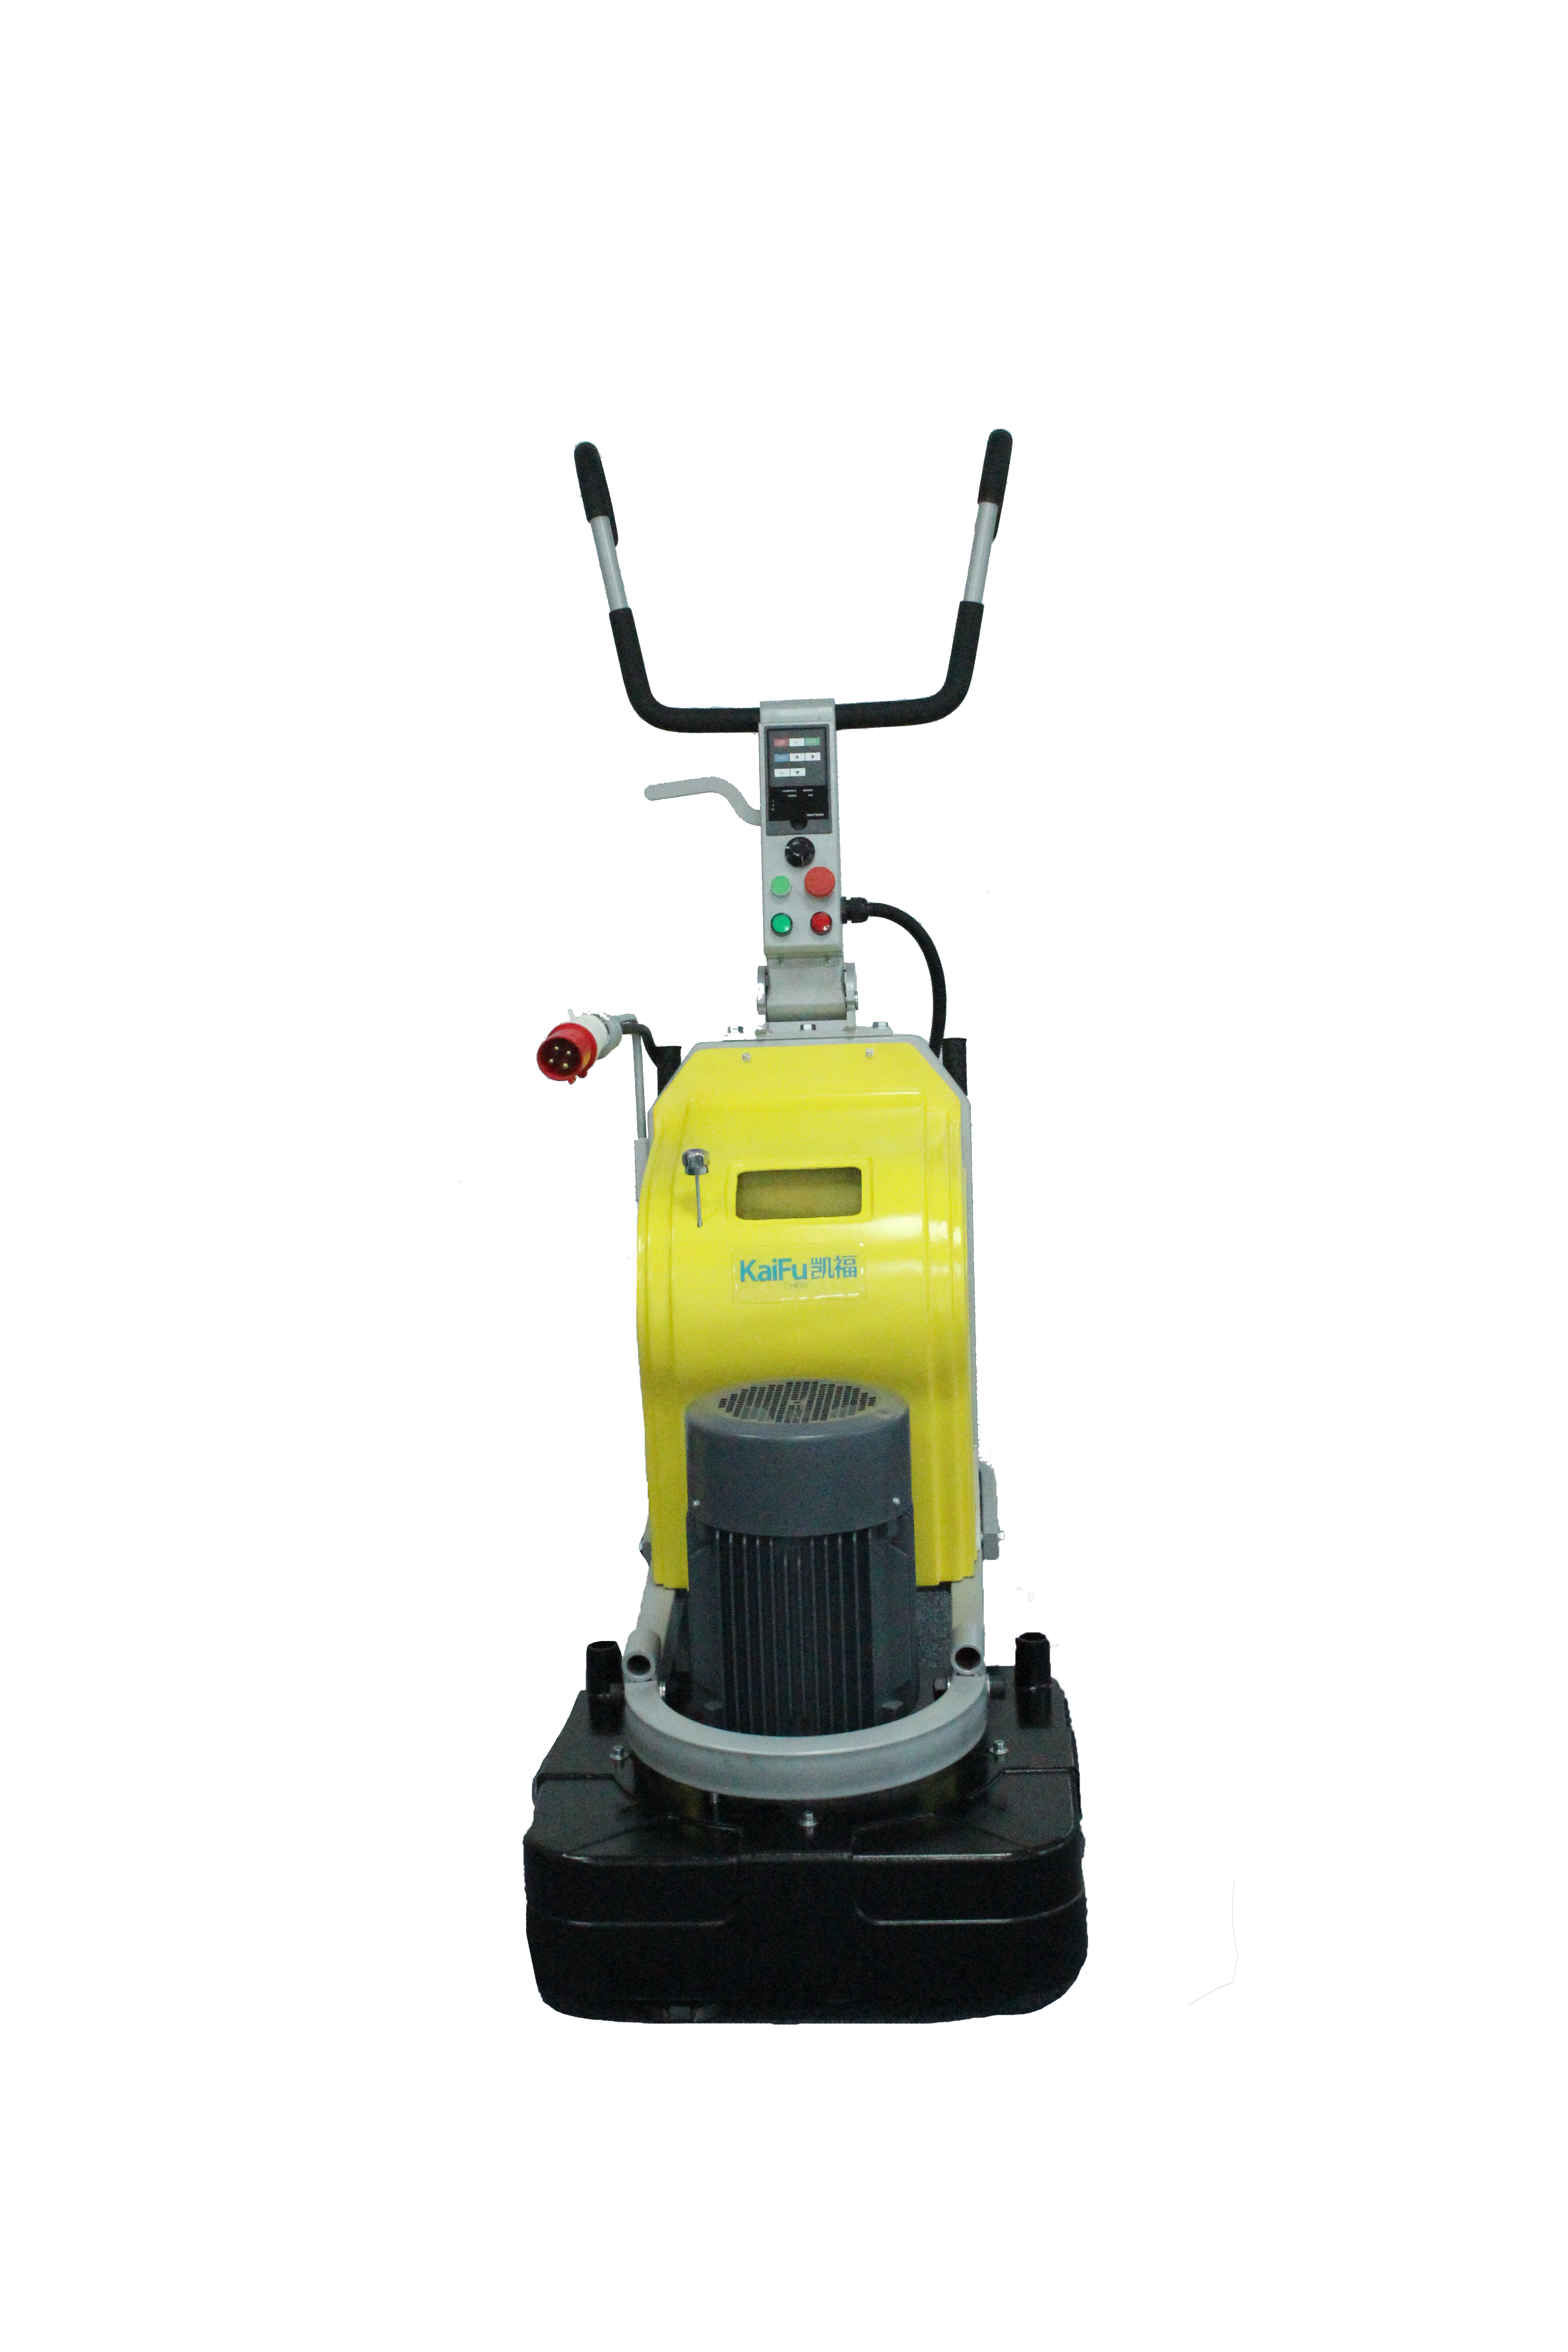 地坪研磨机是一种常用的研磨设备,主要用于混凝土地面干湿研磨,具有